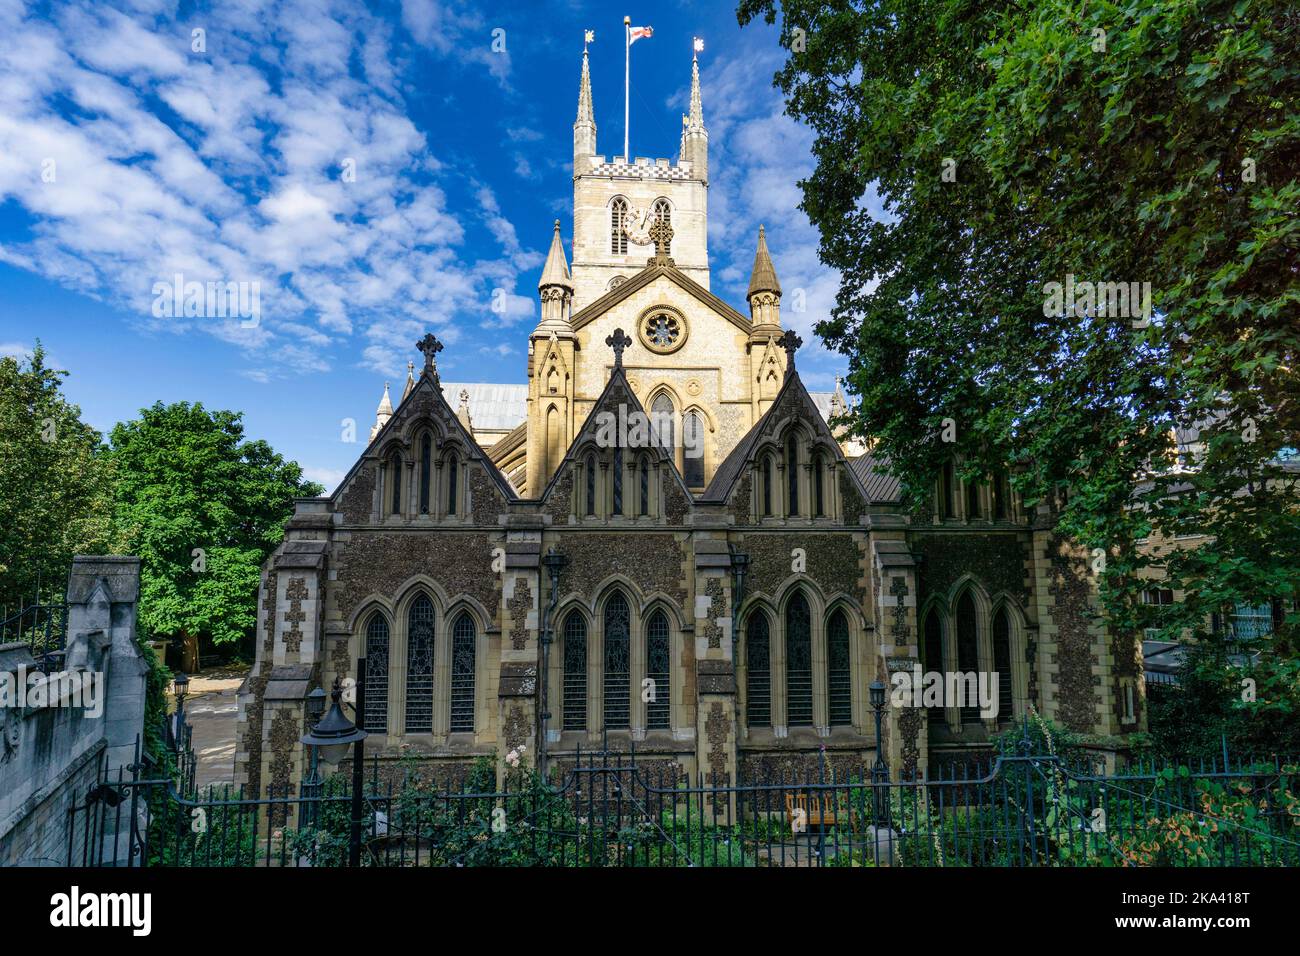 La cathédrale de Southwark, London, England, UK Banque D'Images